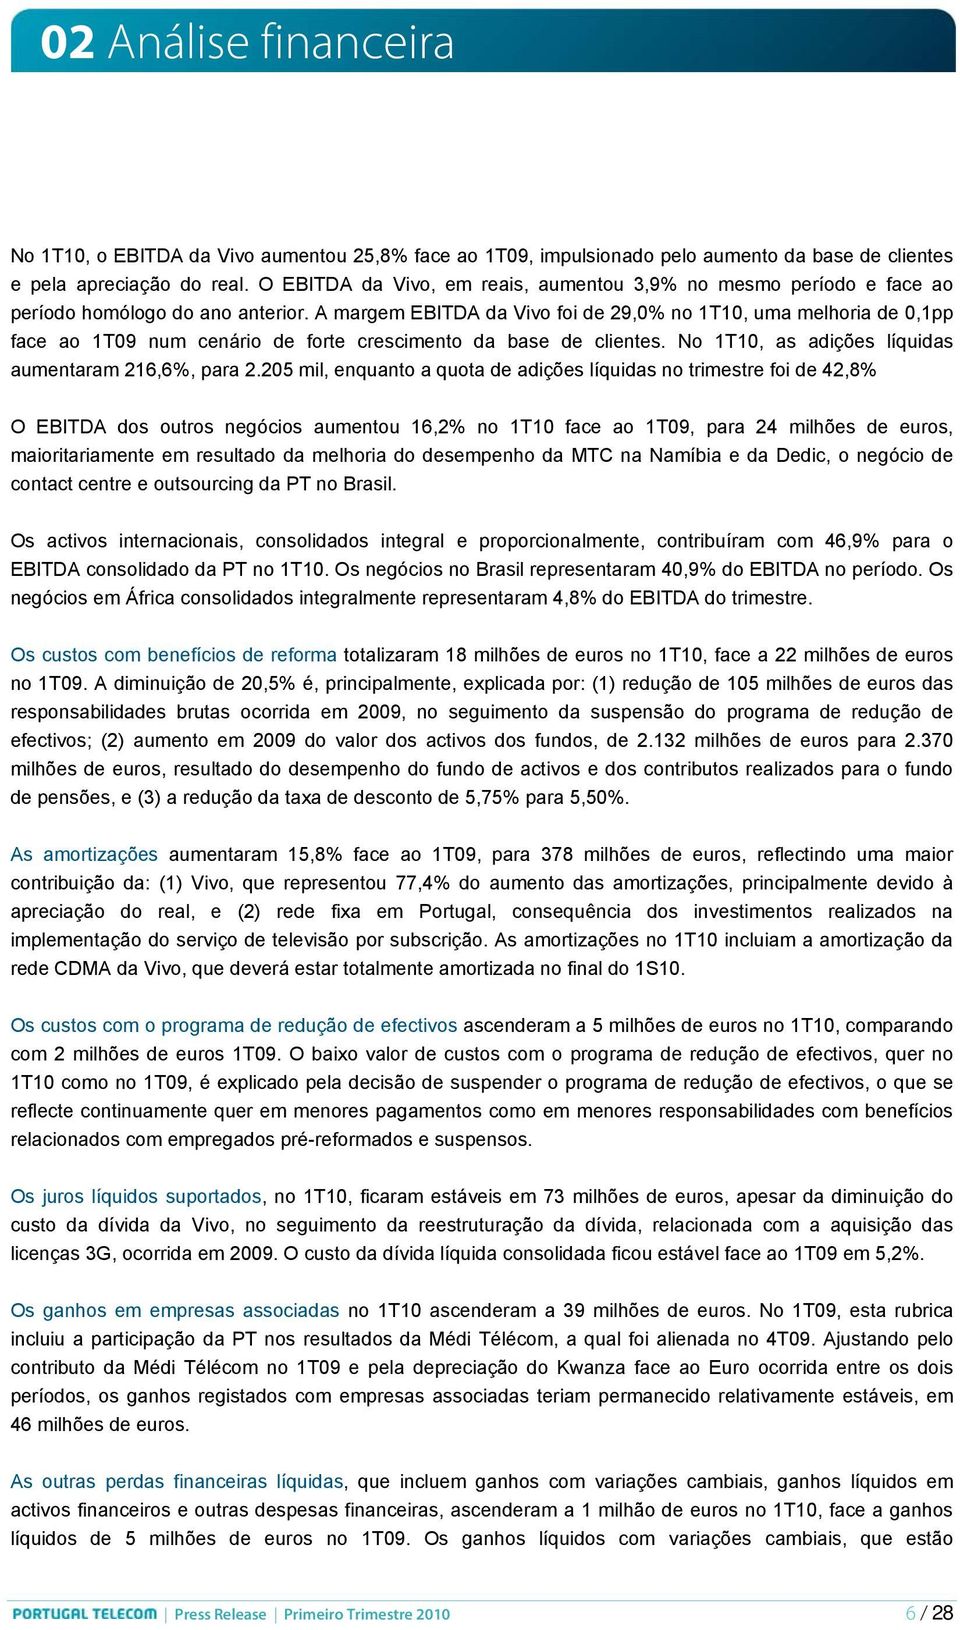 A margem EBITDA da Vivo foi de 29,0% no 1T10, uma melhoria de 0,1pp face ao 1T09 num cenário de forte crescimento da base de clientes. No 1T10, as adições líquidas aumentaram 216,6%, para 2.